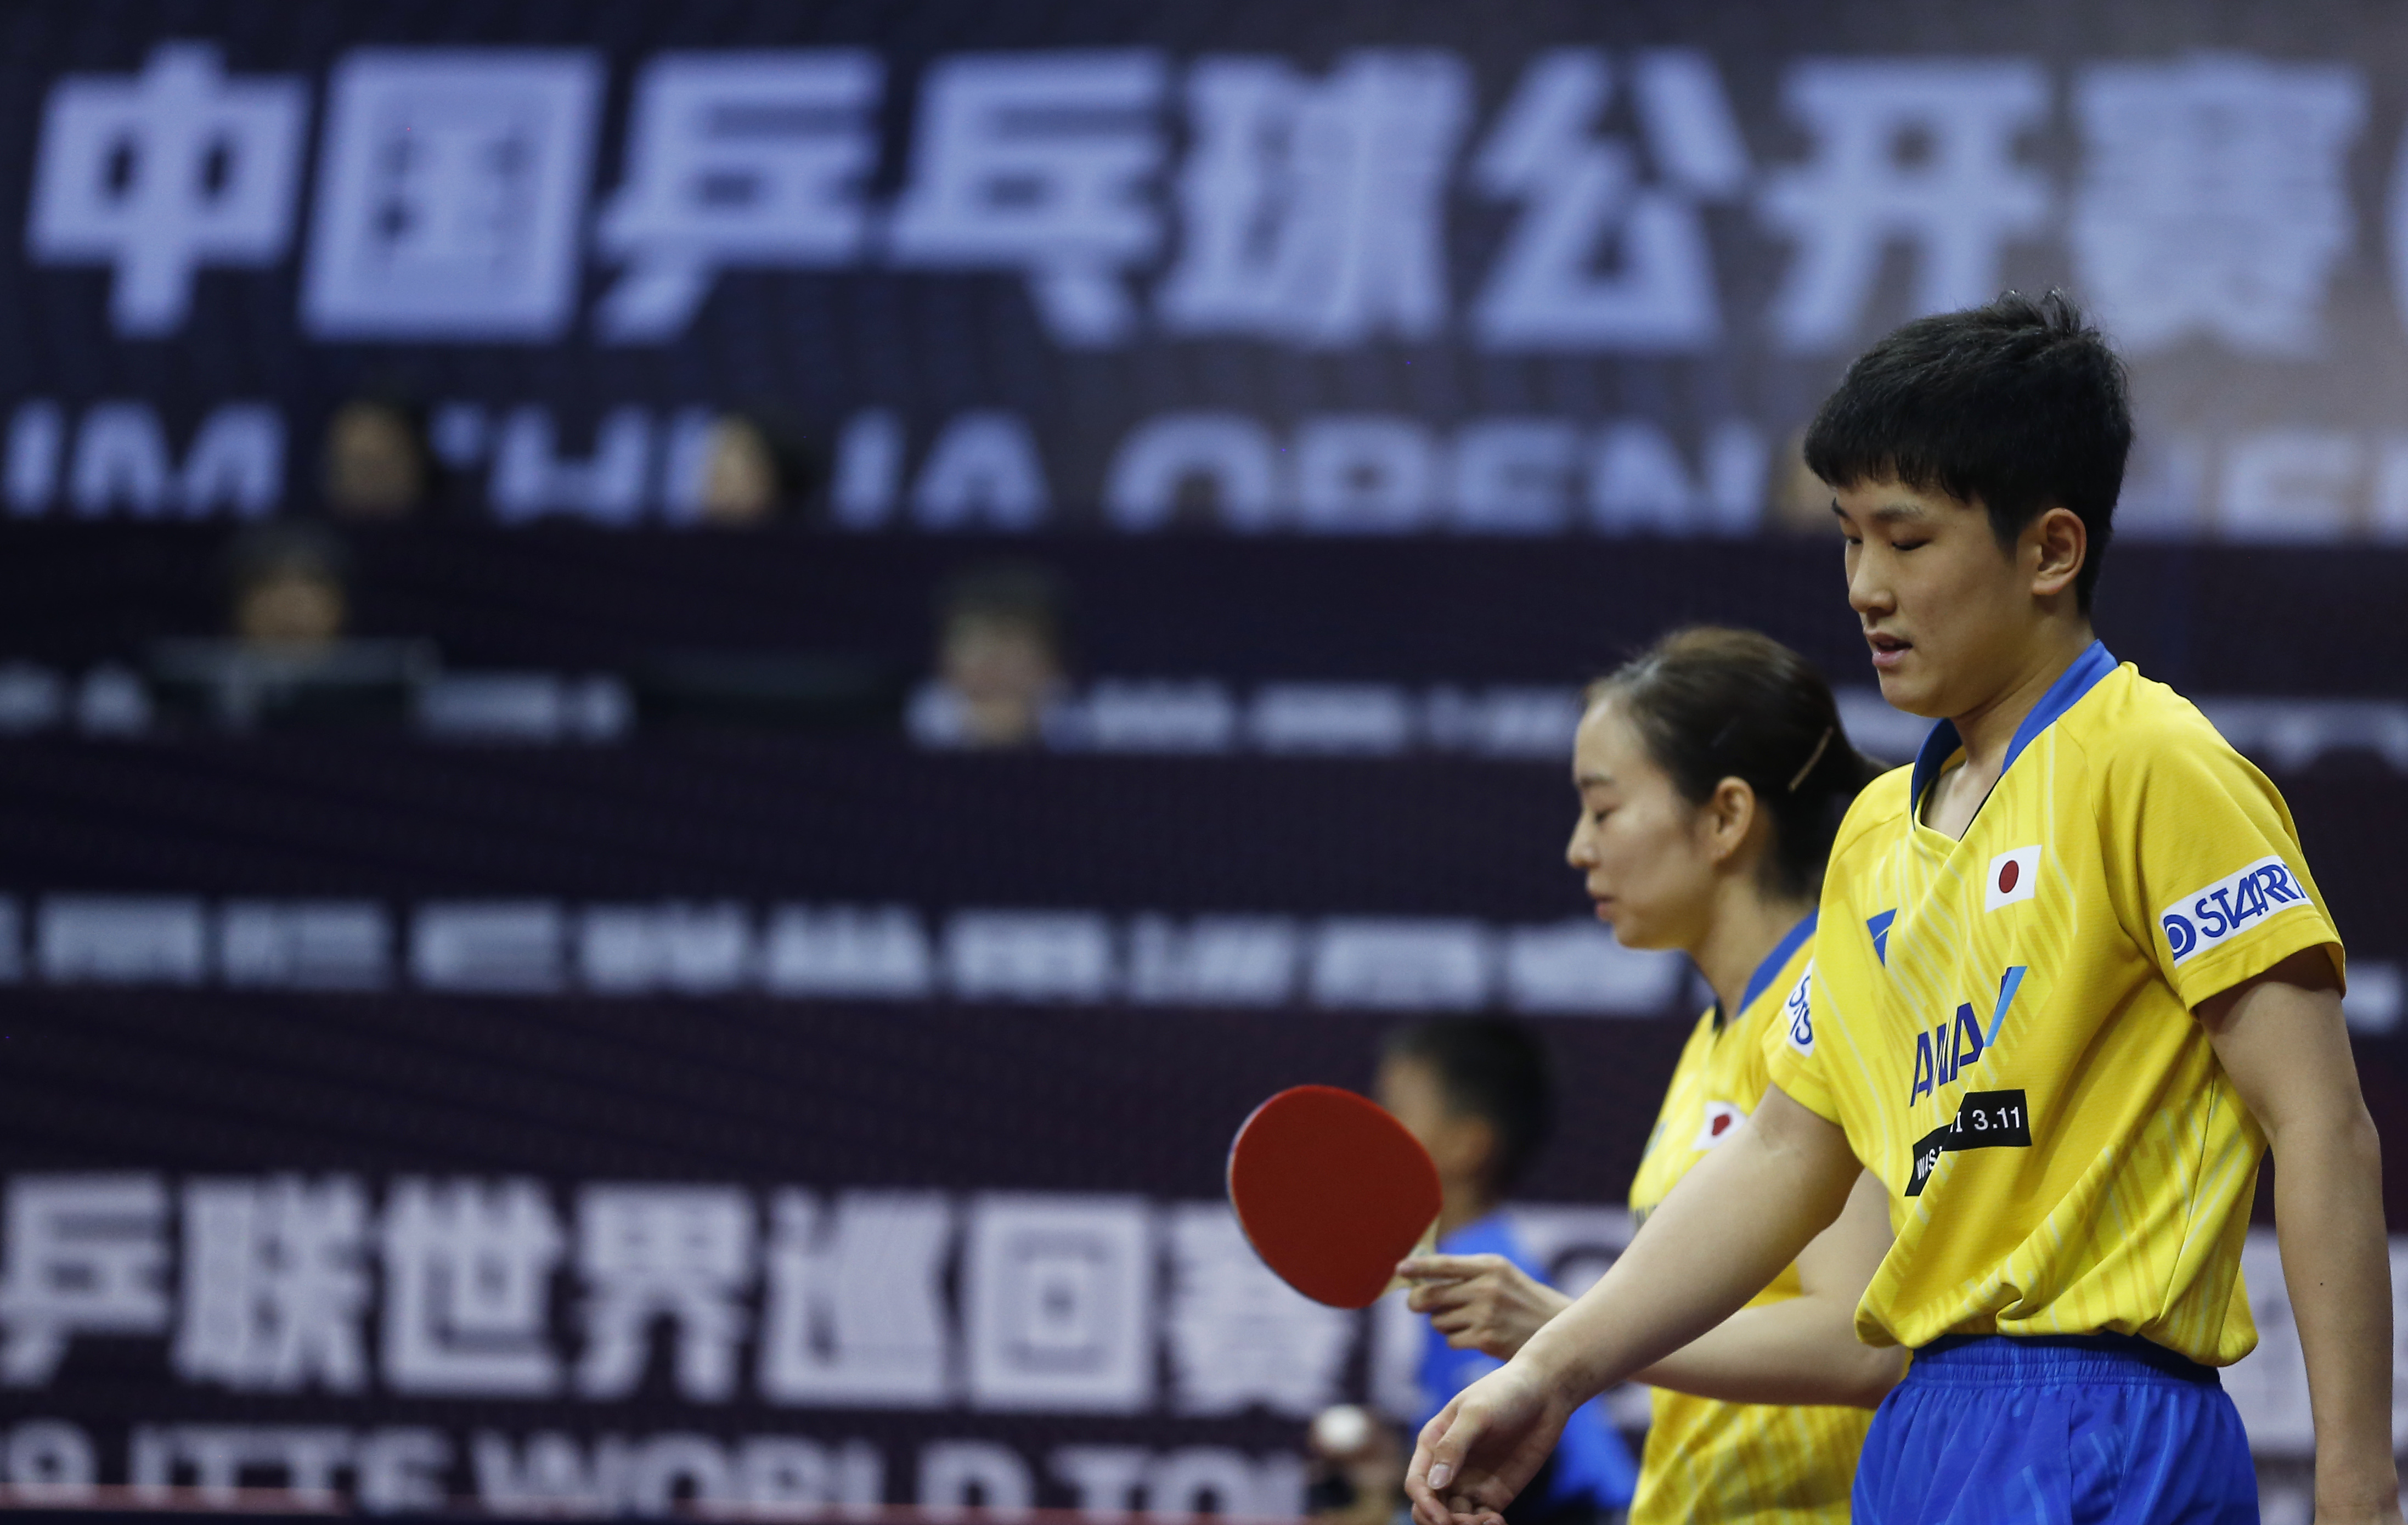 当日,在深圳进行的国际乒联世界巡回赛2019中国乒乓球公开赛混双四分